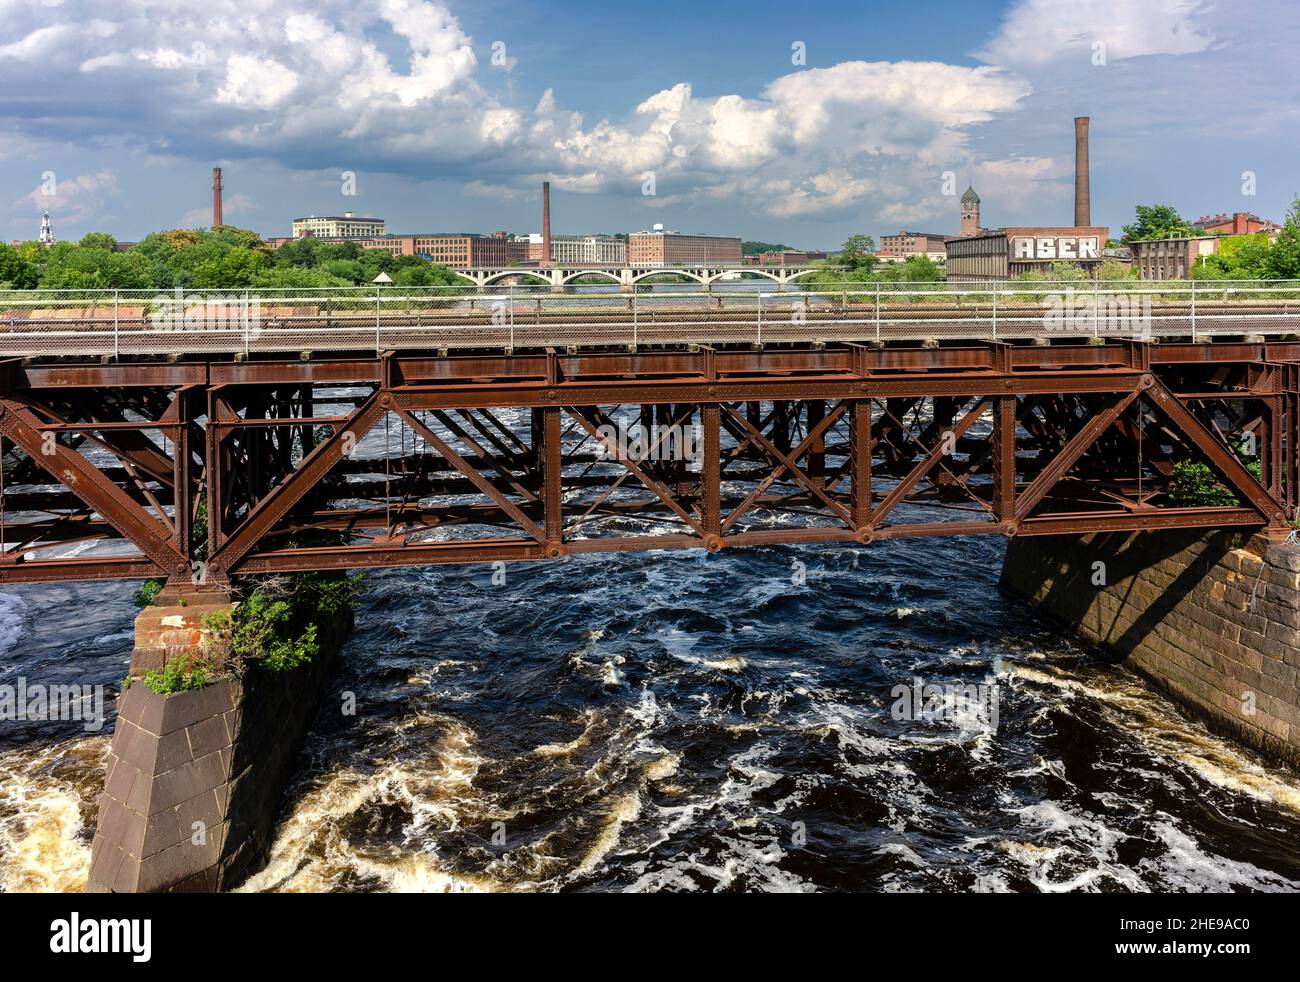 Blick auf eine Eisenbahnbrücke, die den Merrimack River überquert, der durch die Mühlenstadt Lawrence, Massachusetts, fließt. Stockfoto